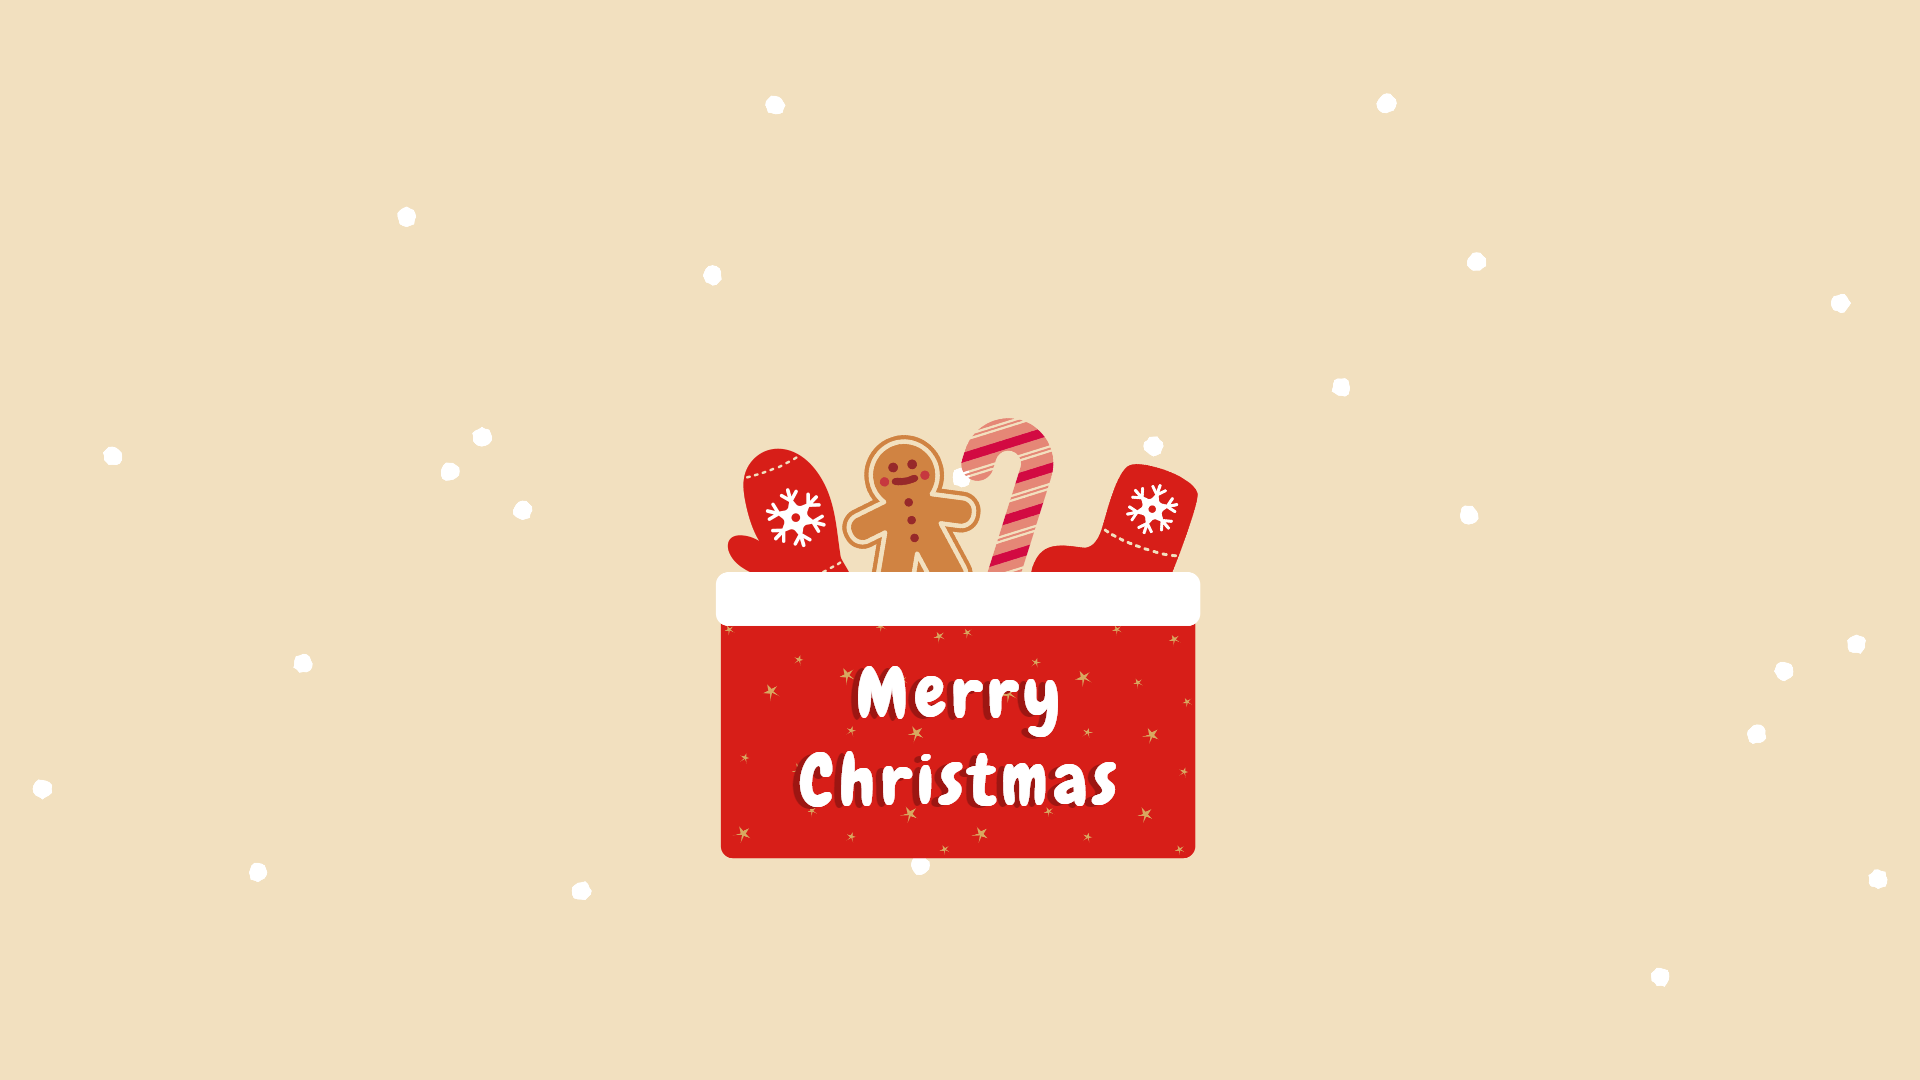  PC Weihnachten Hintergrundbild 1920x1080. Christmas Wallpaper & Background for Your Holiday Celebration